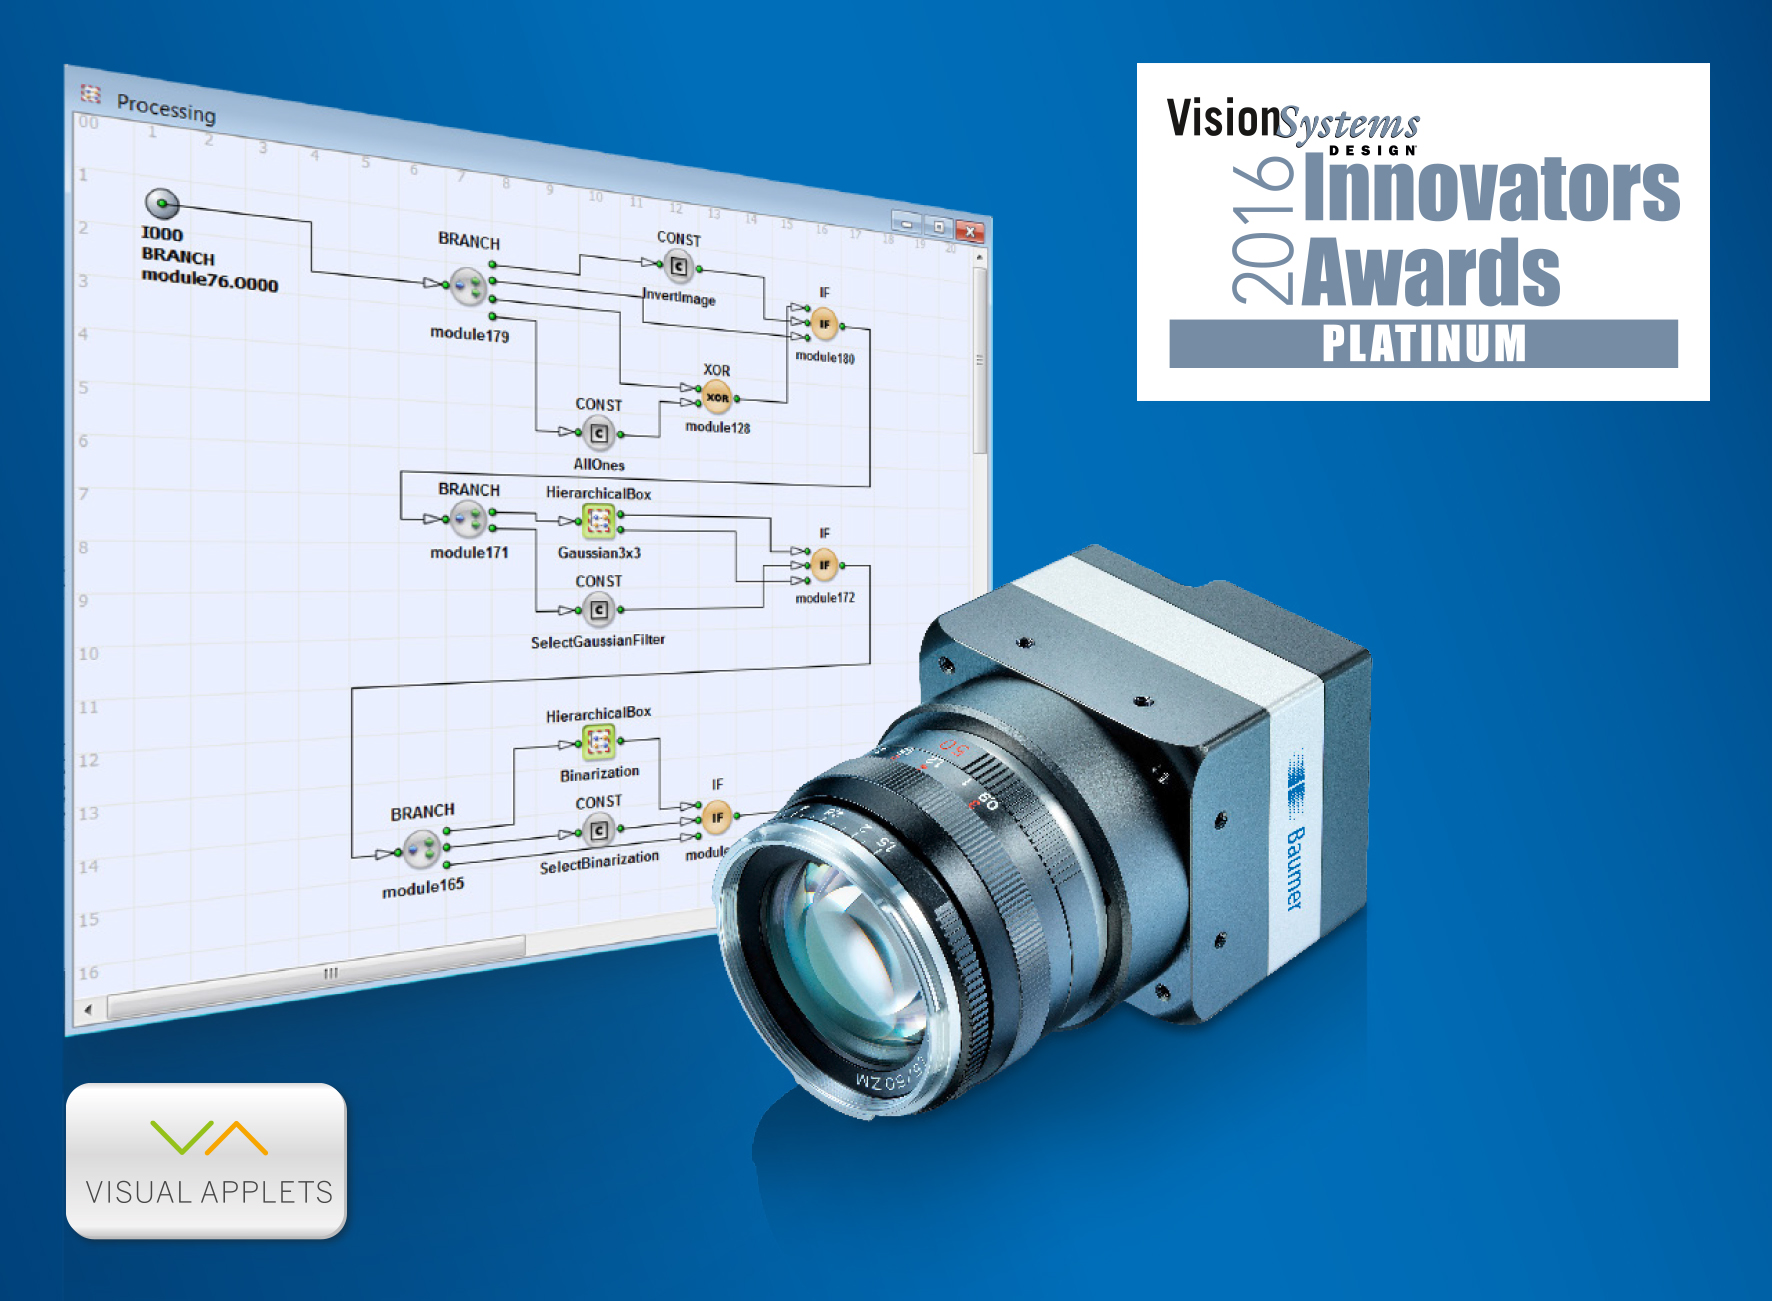 Baumer_VSD-Platinum-Award-LX-VisualApplets-Cameras_ML_20160504_PH.jpg